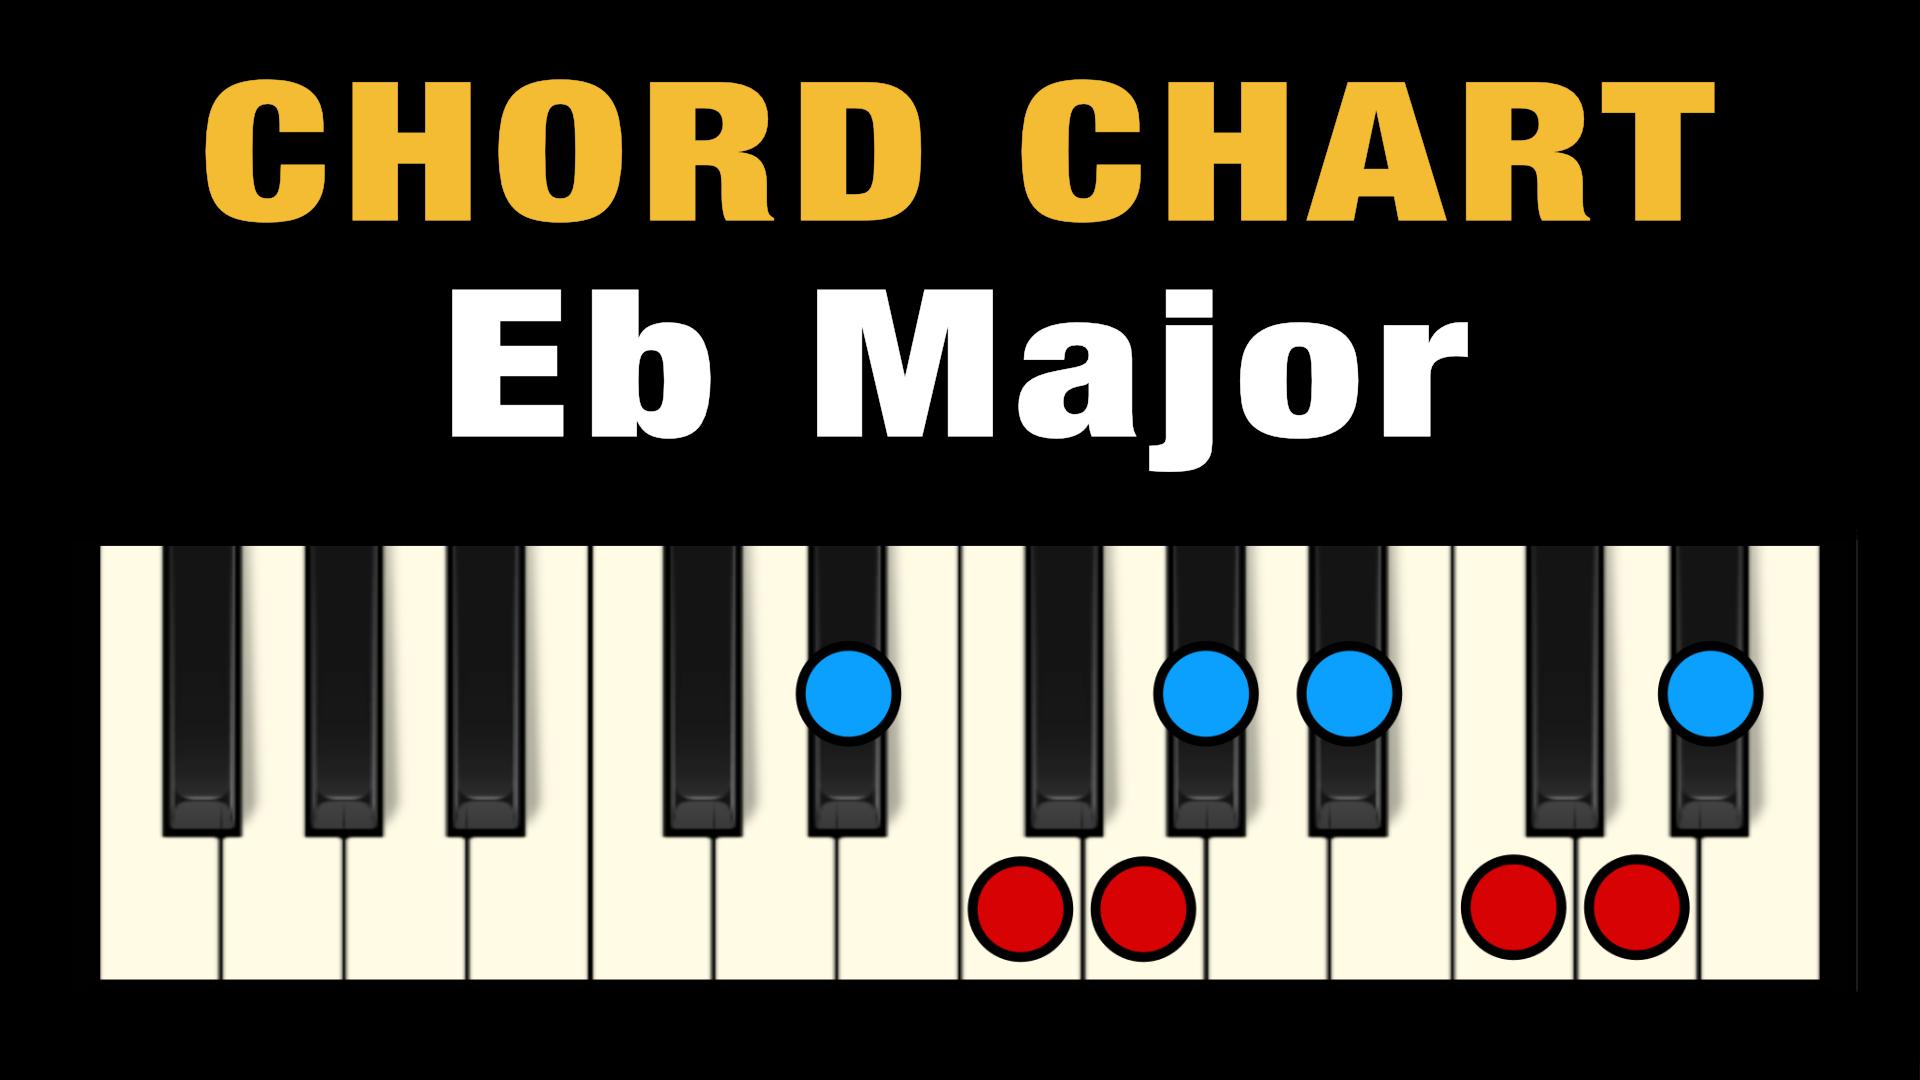 Eb sus  piano chords sus2, sus4